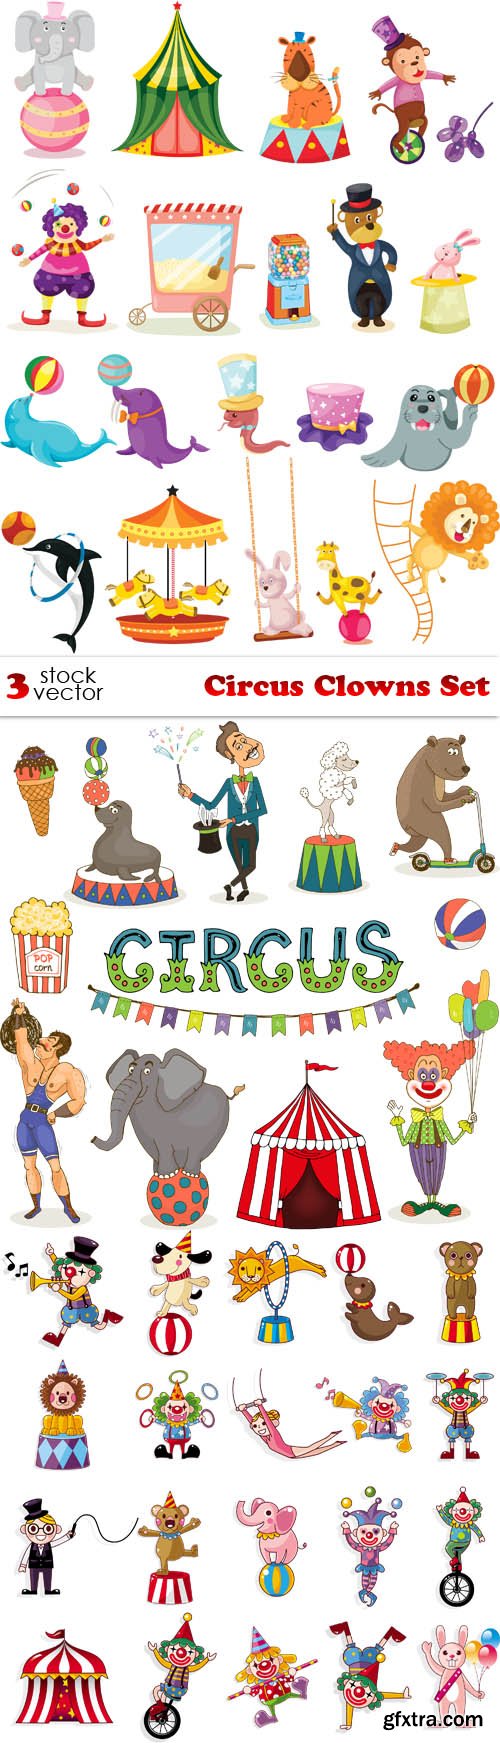 Vectors - Circus Clowns Set